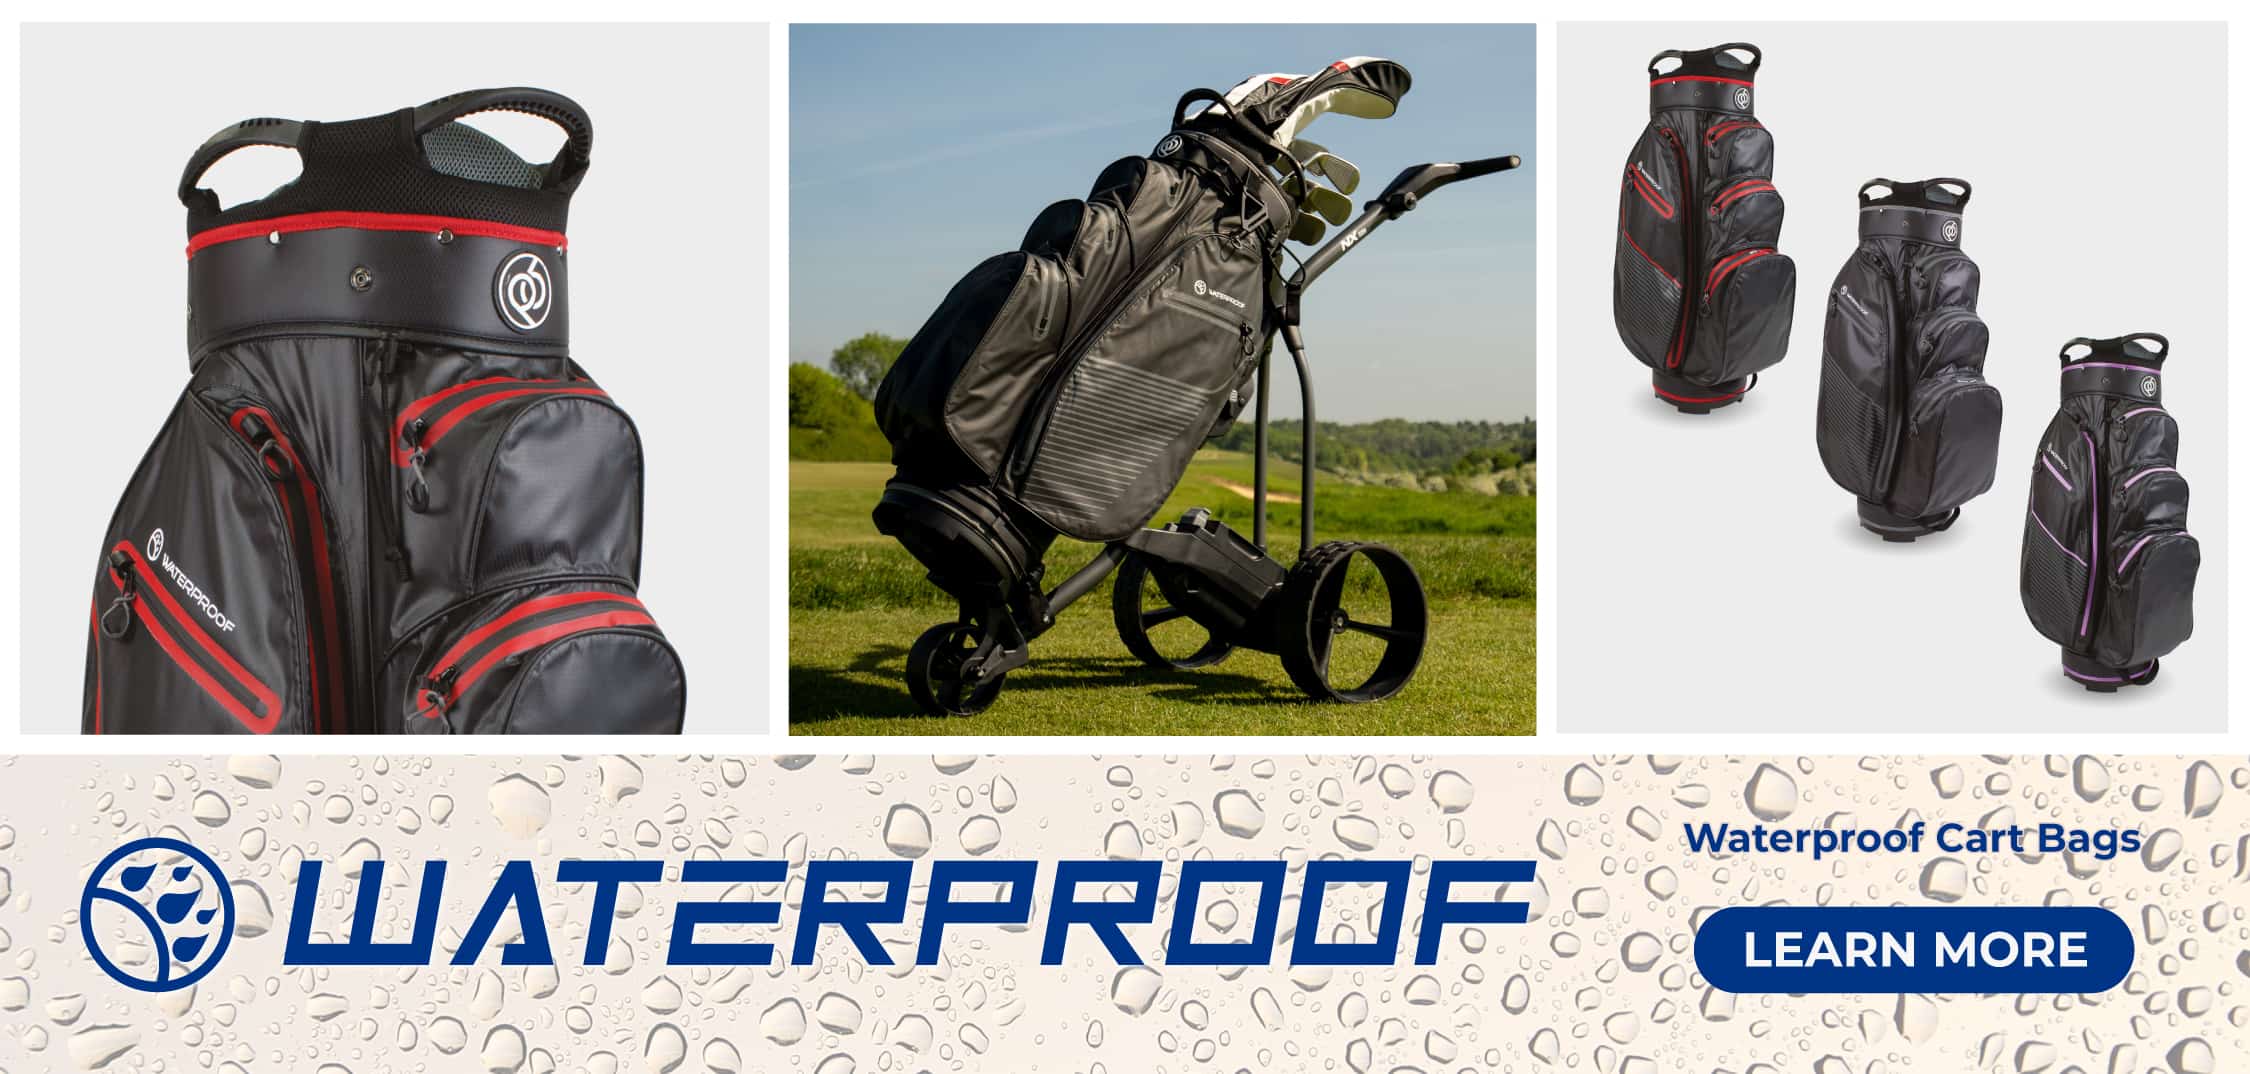 PowerBug waterproof golf bags